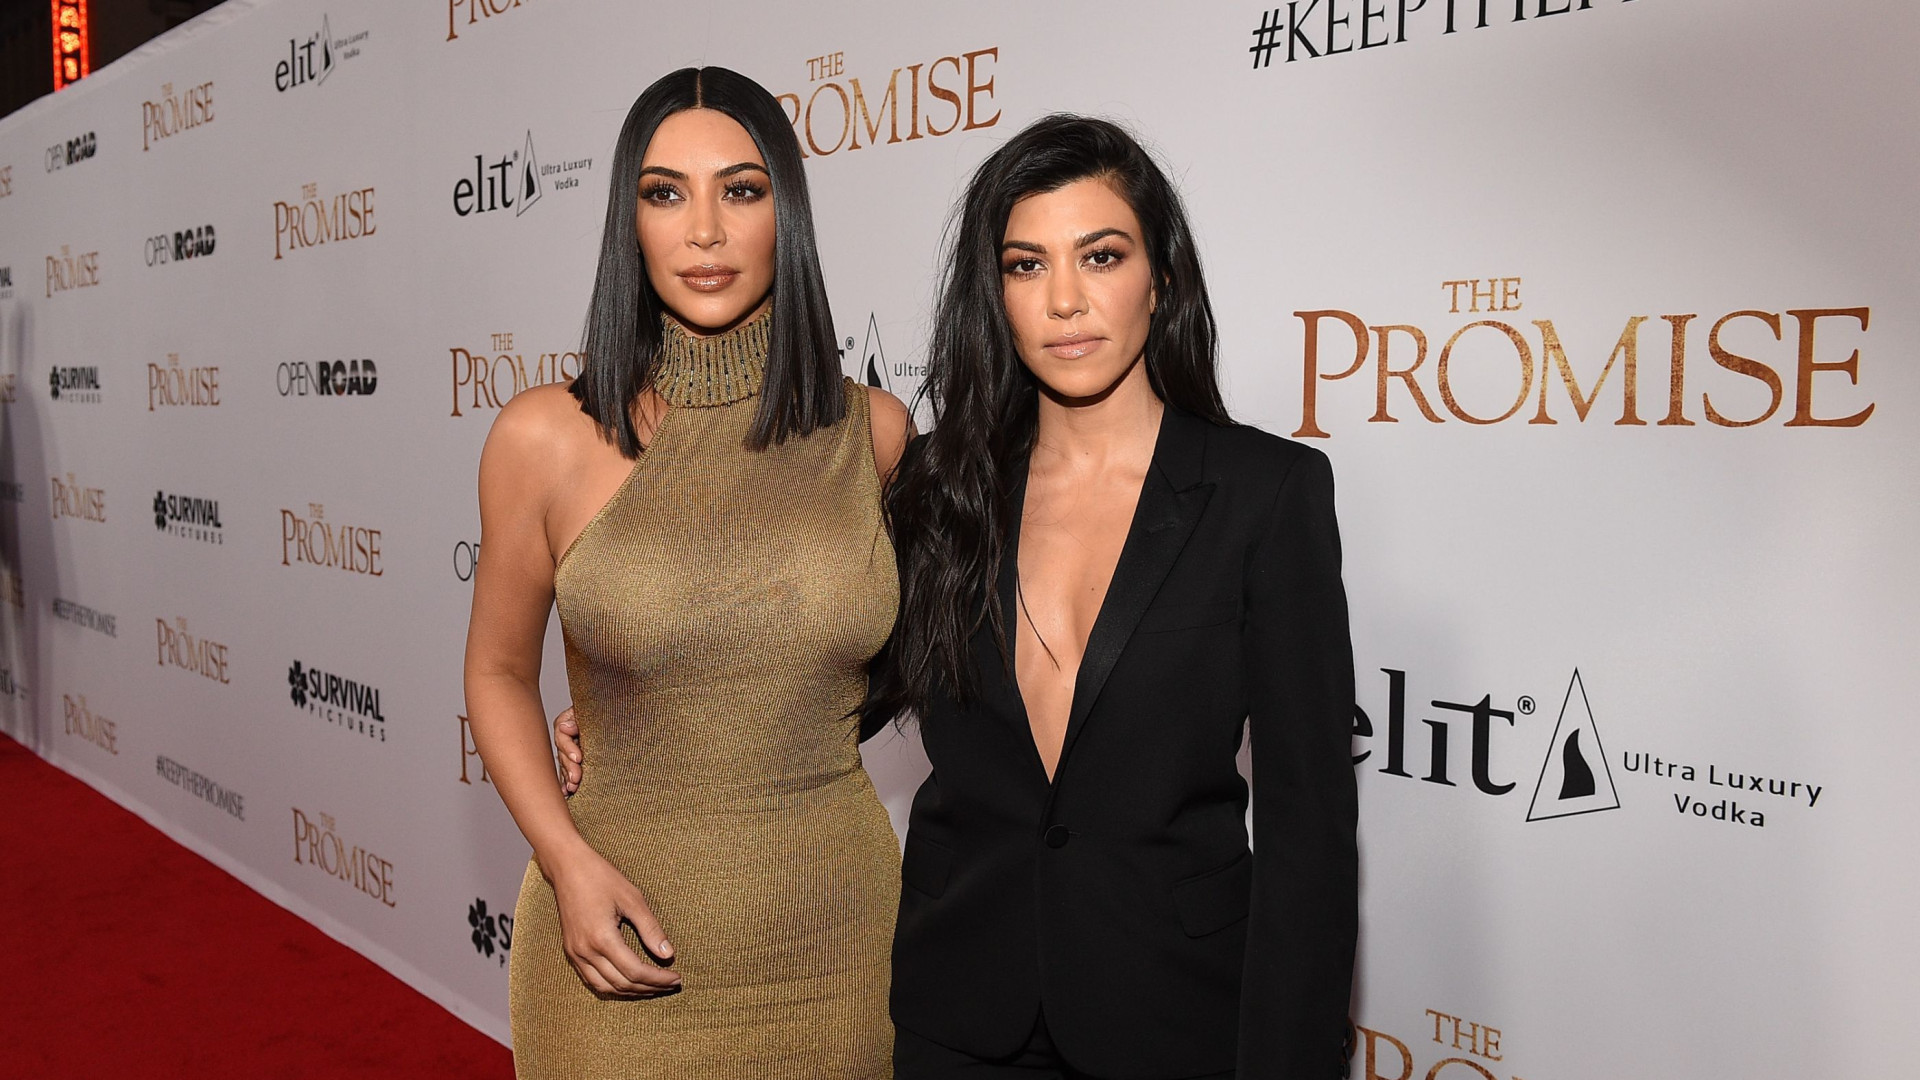 Kim e Kourtney Kardashian falam em se aposentar nos próximos anos